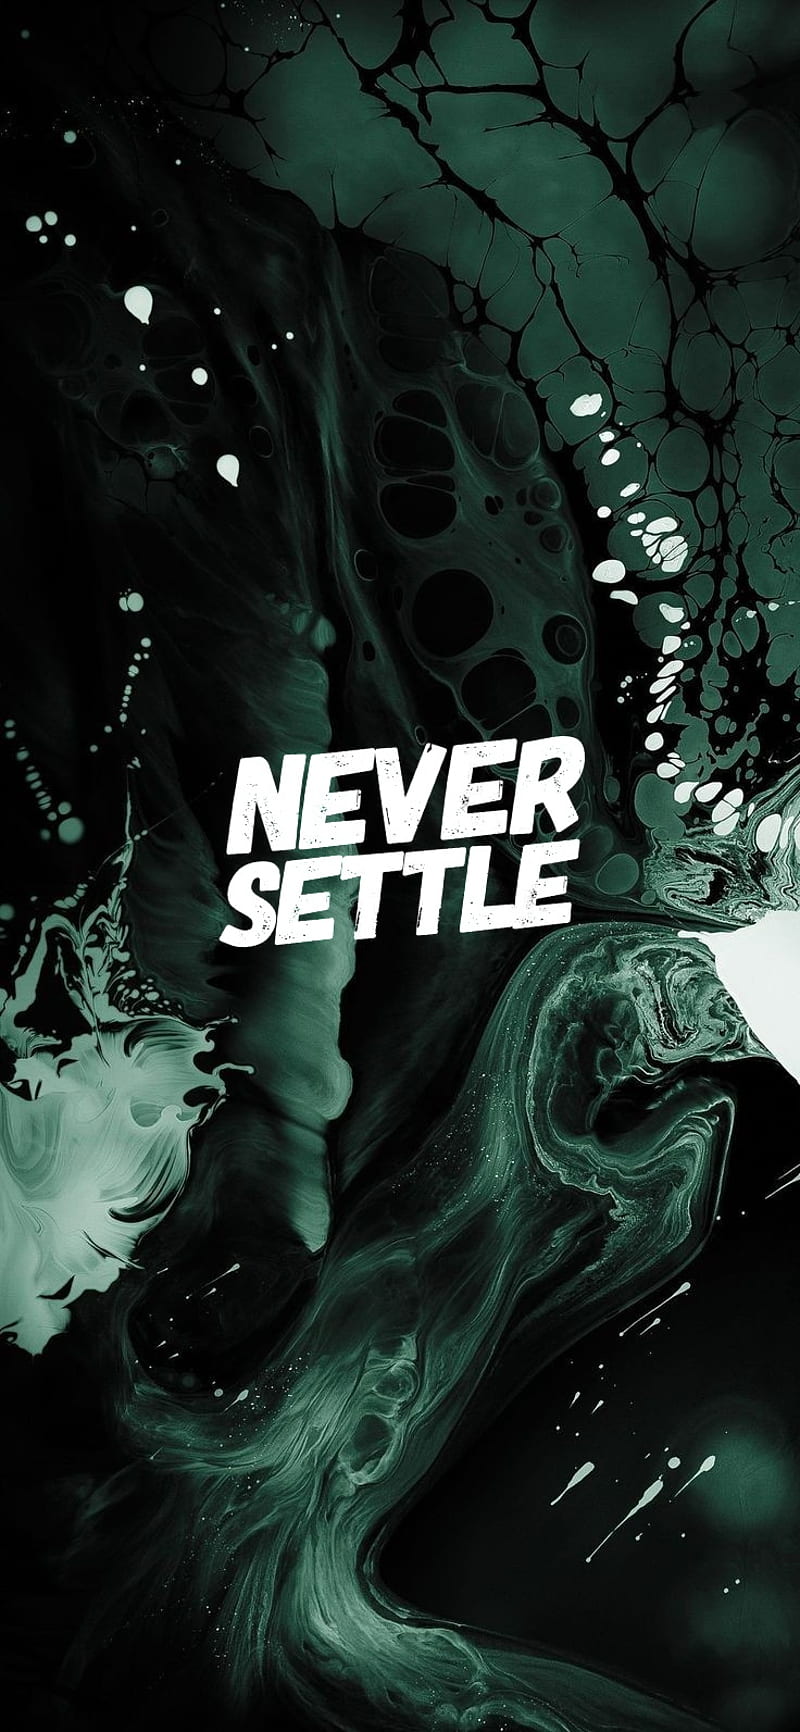 Never Settle 2, amoled, green, never settle, oneplus, HD phone wallpaper